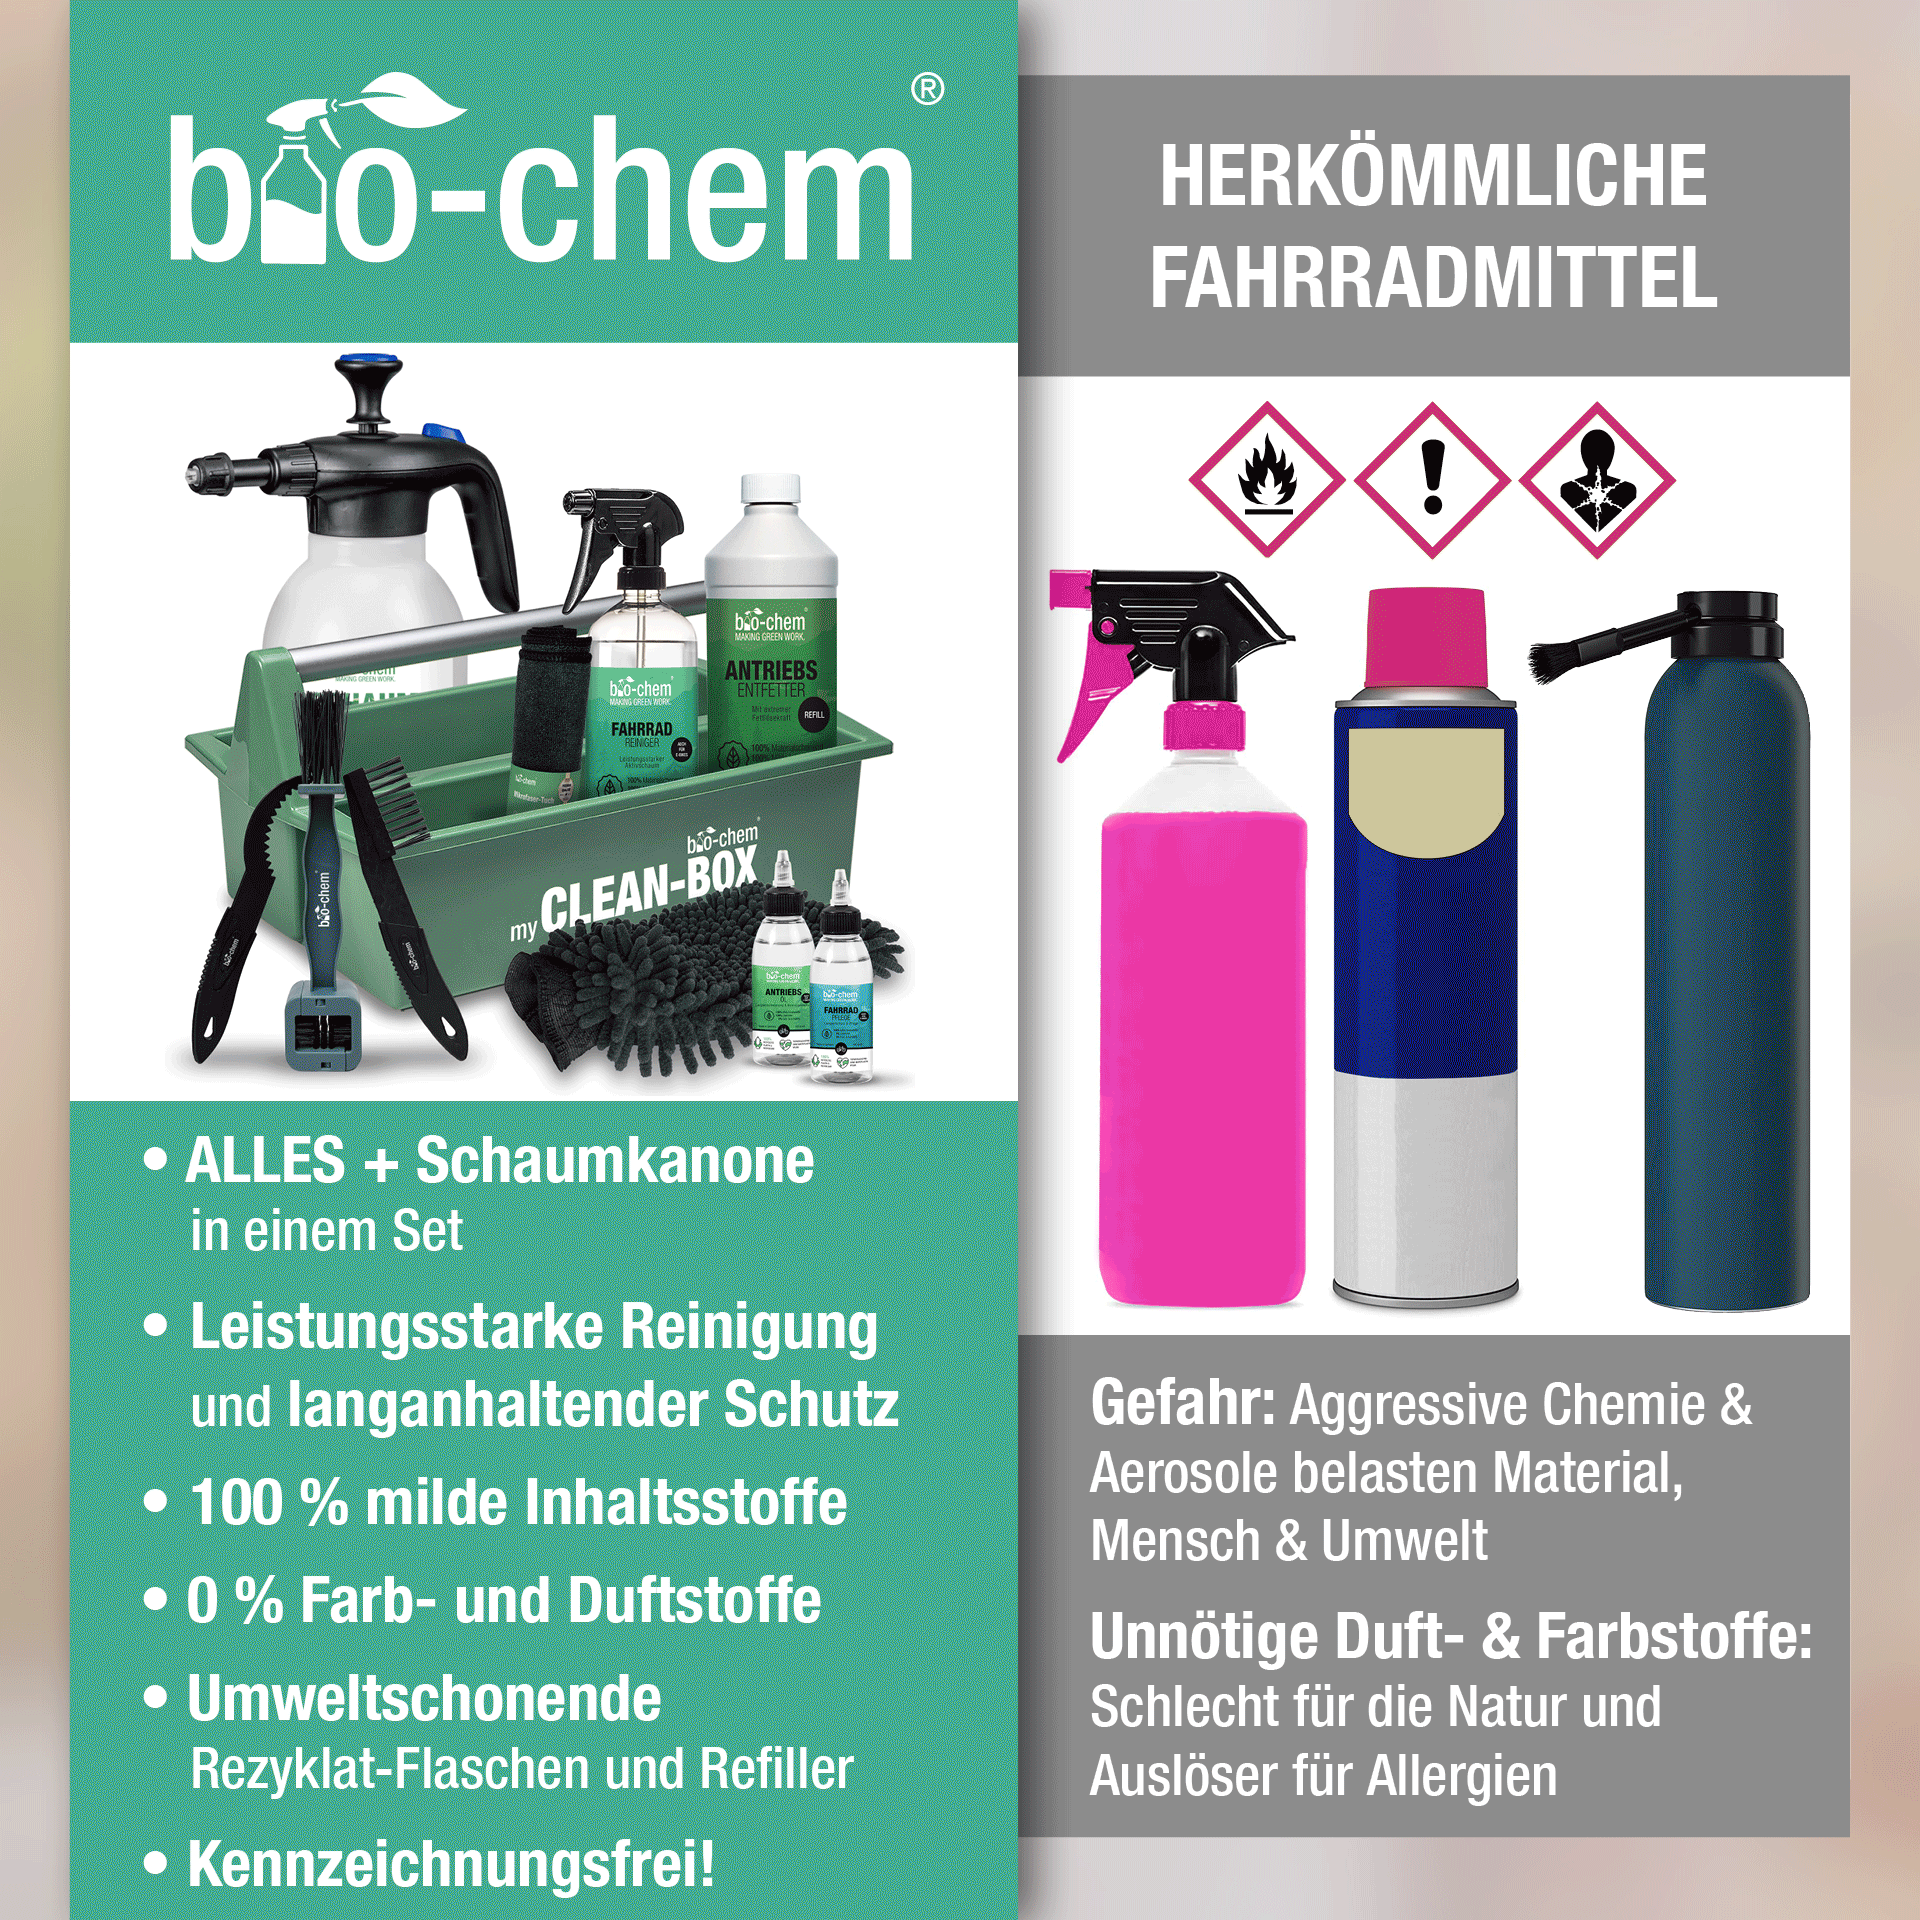 Vergleich bio-chem mit herkömmlichen Fahrradreinigungsmitteln.